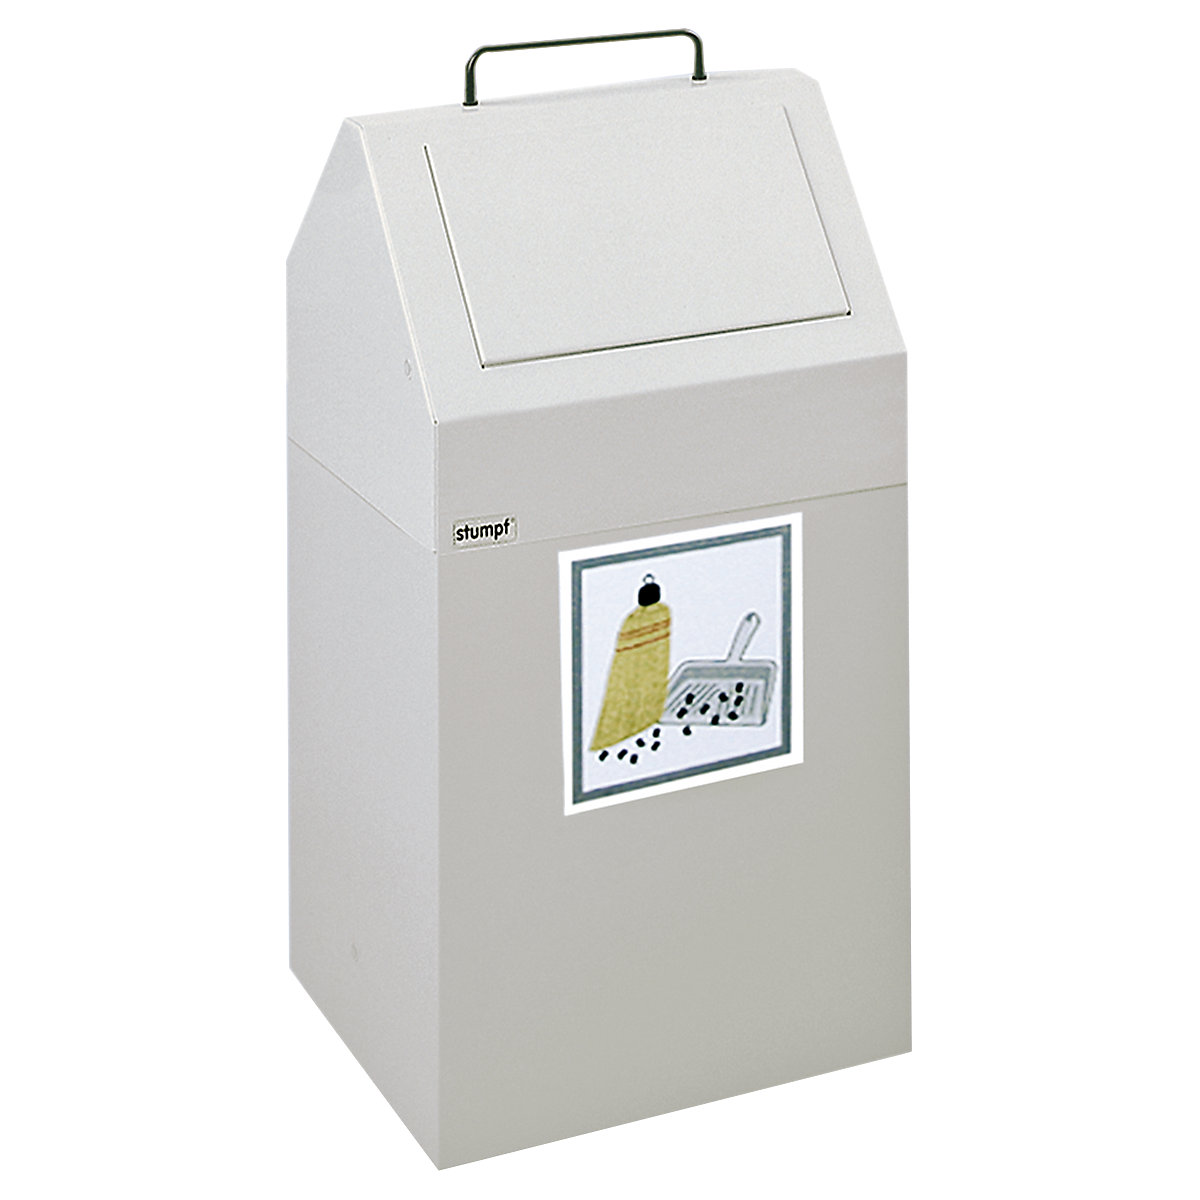 Coletor de materiais recicláveis com tampa de inserção